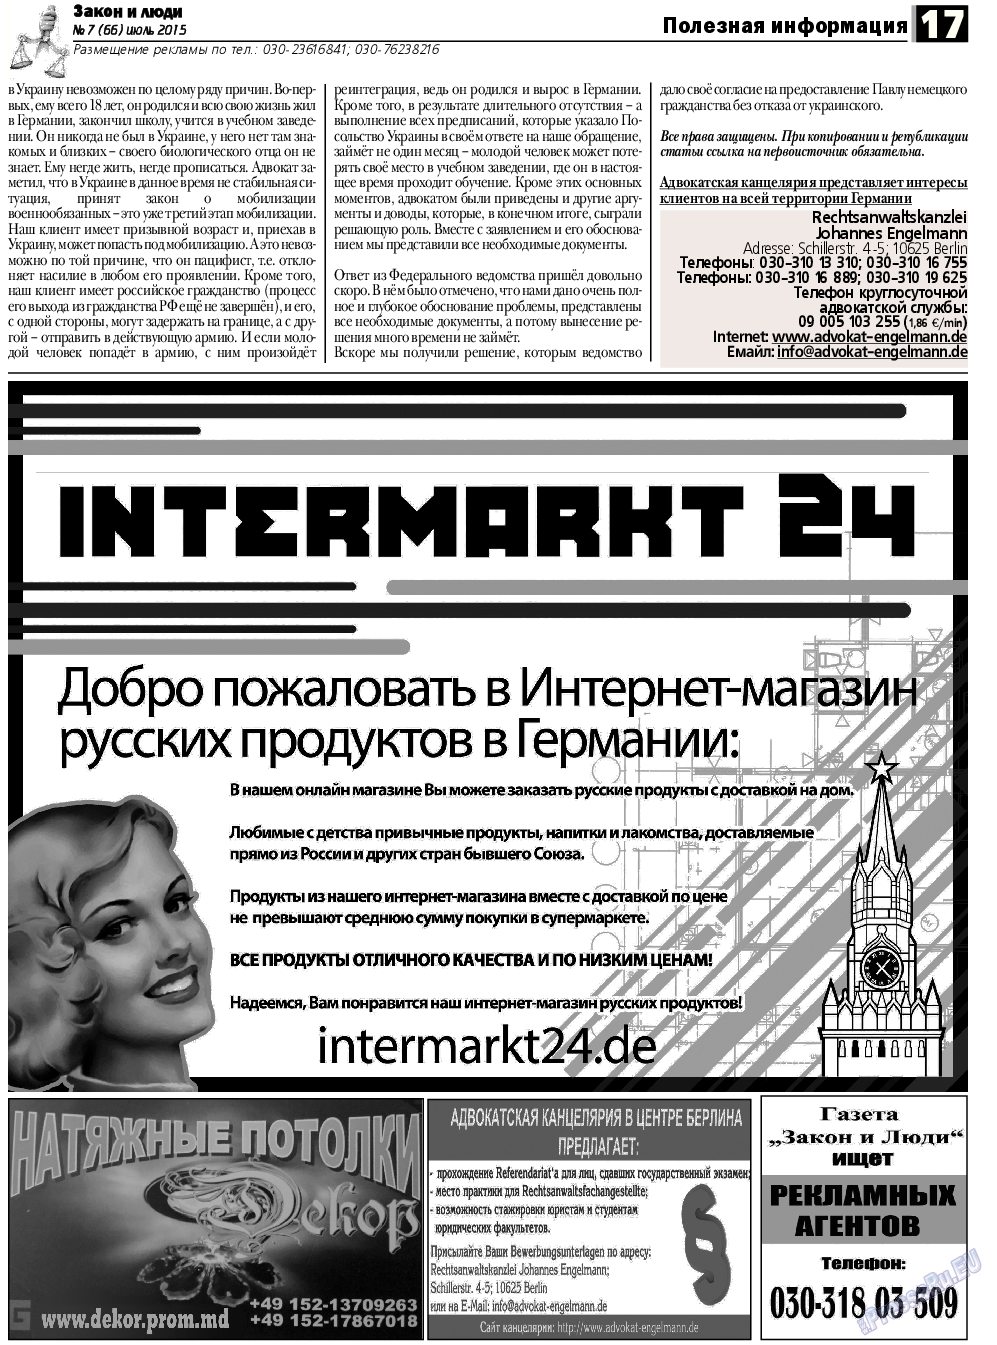 Закон и люди, газета. 2015 №7 стр.17